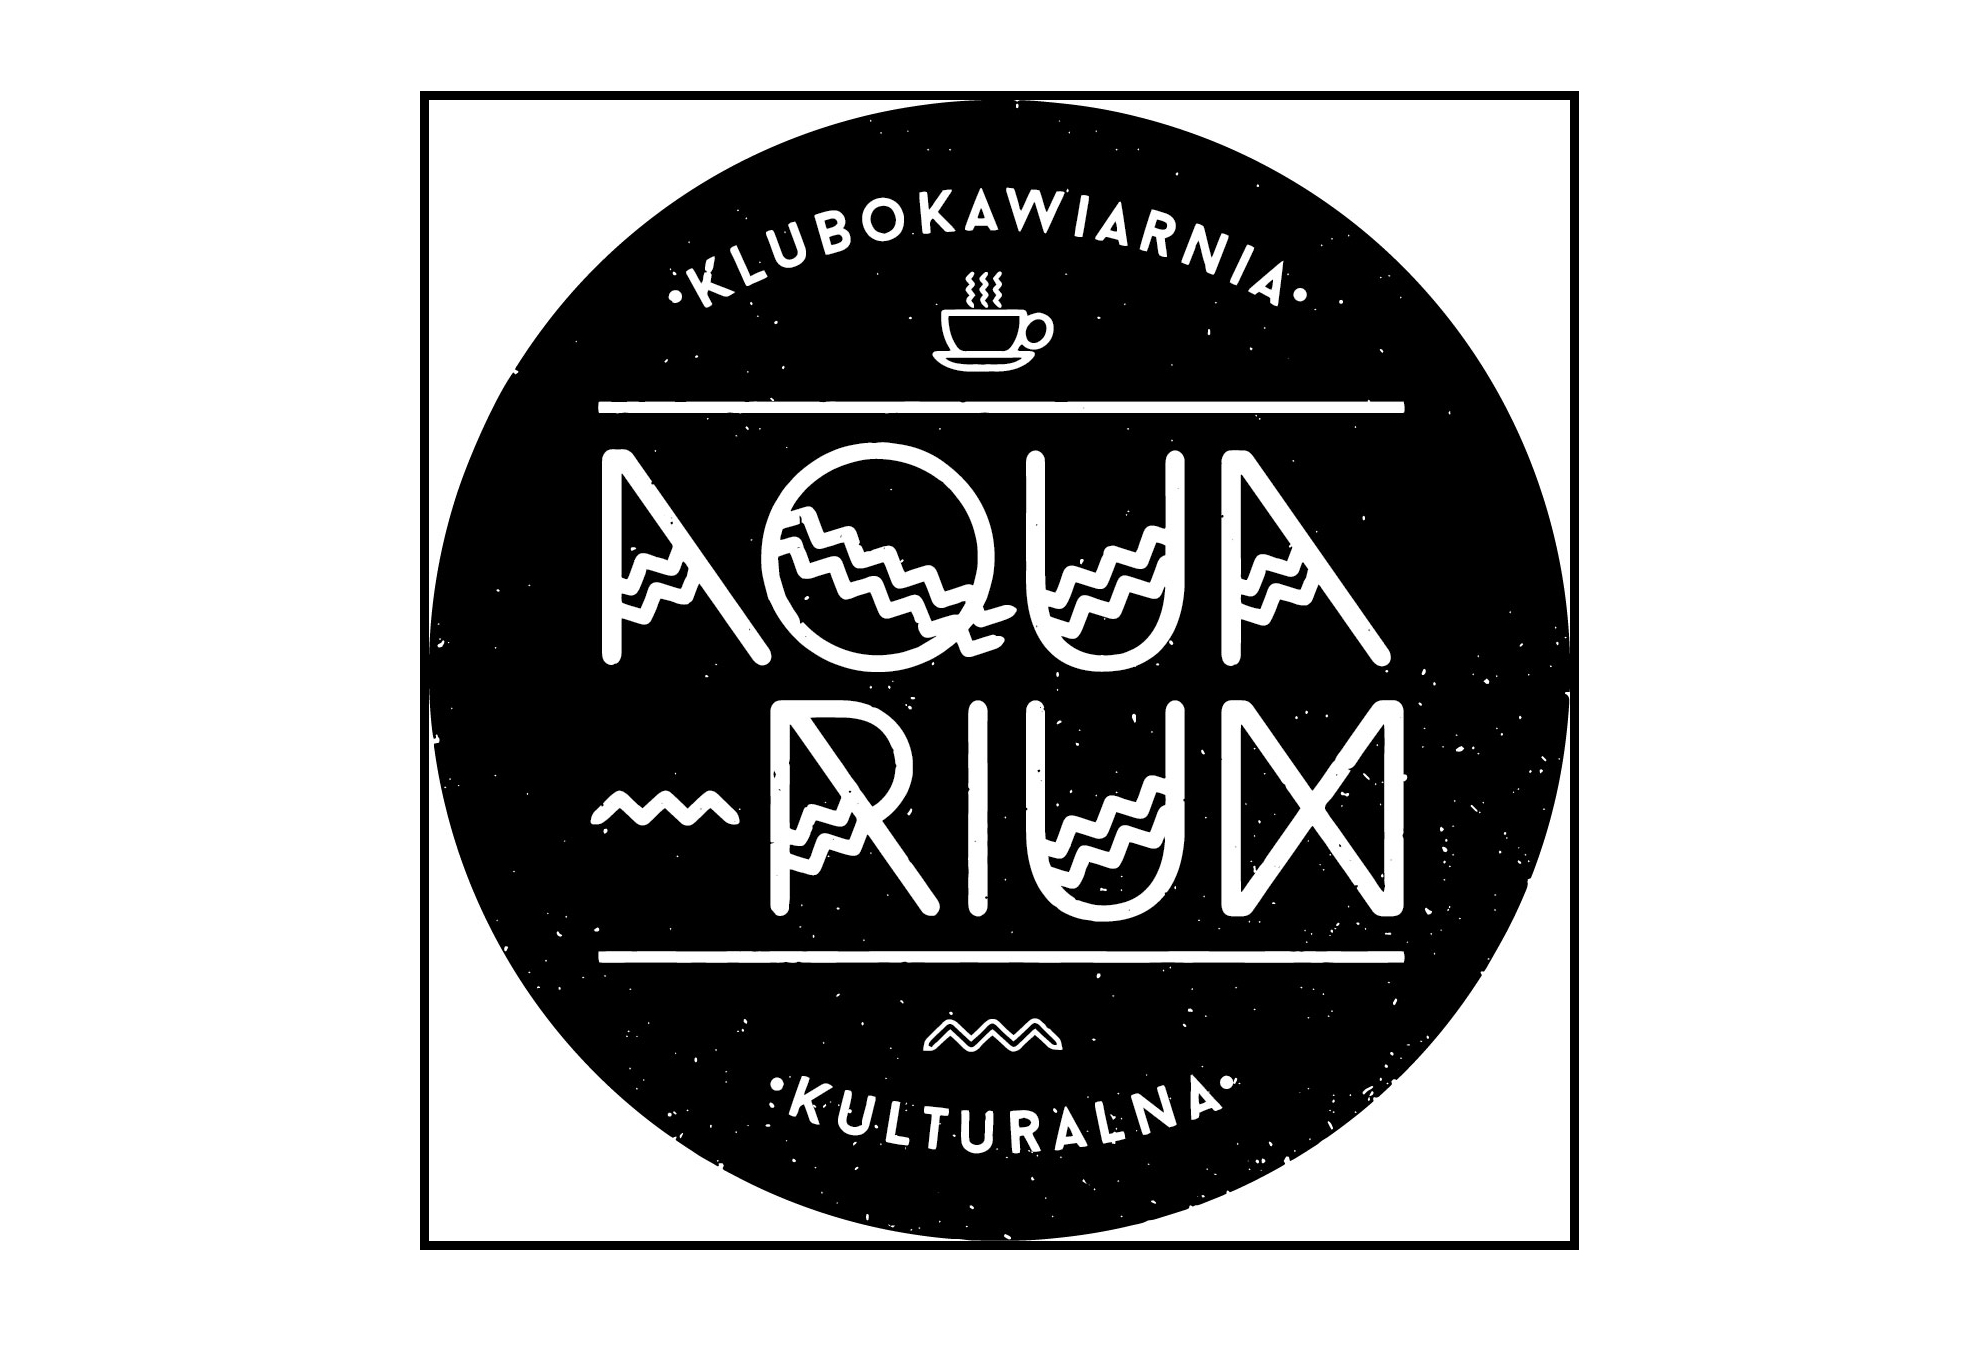  TransIberica Na zdjęciu logo Aquarium